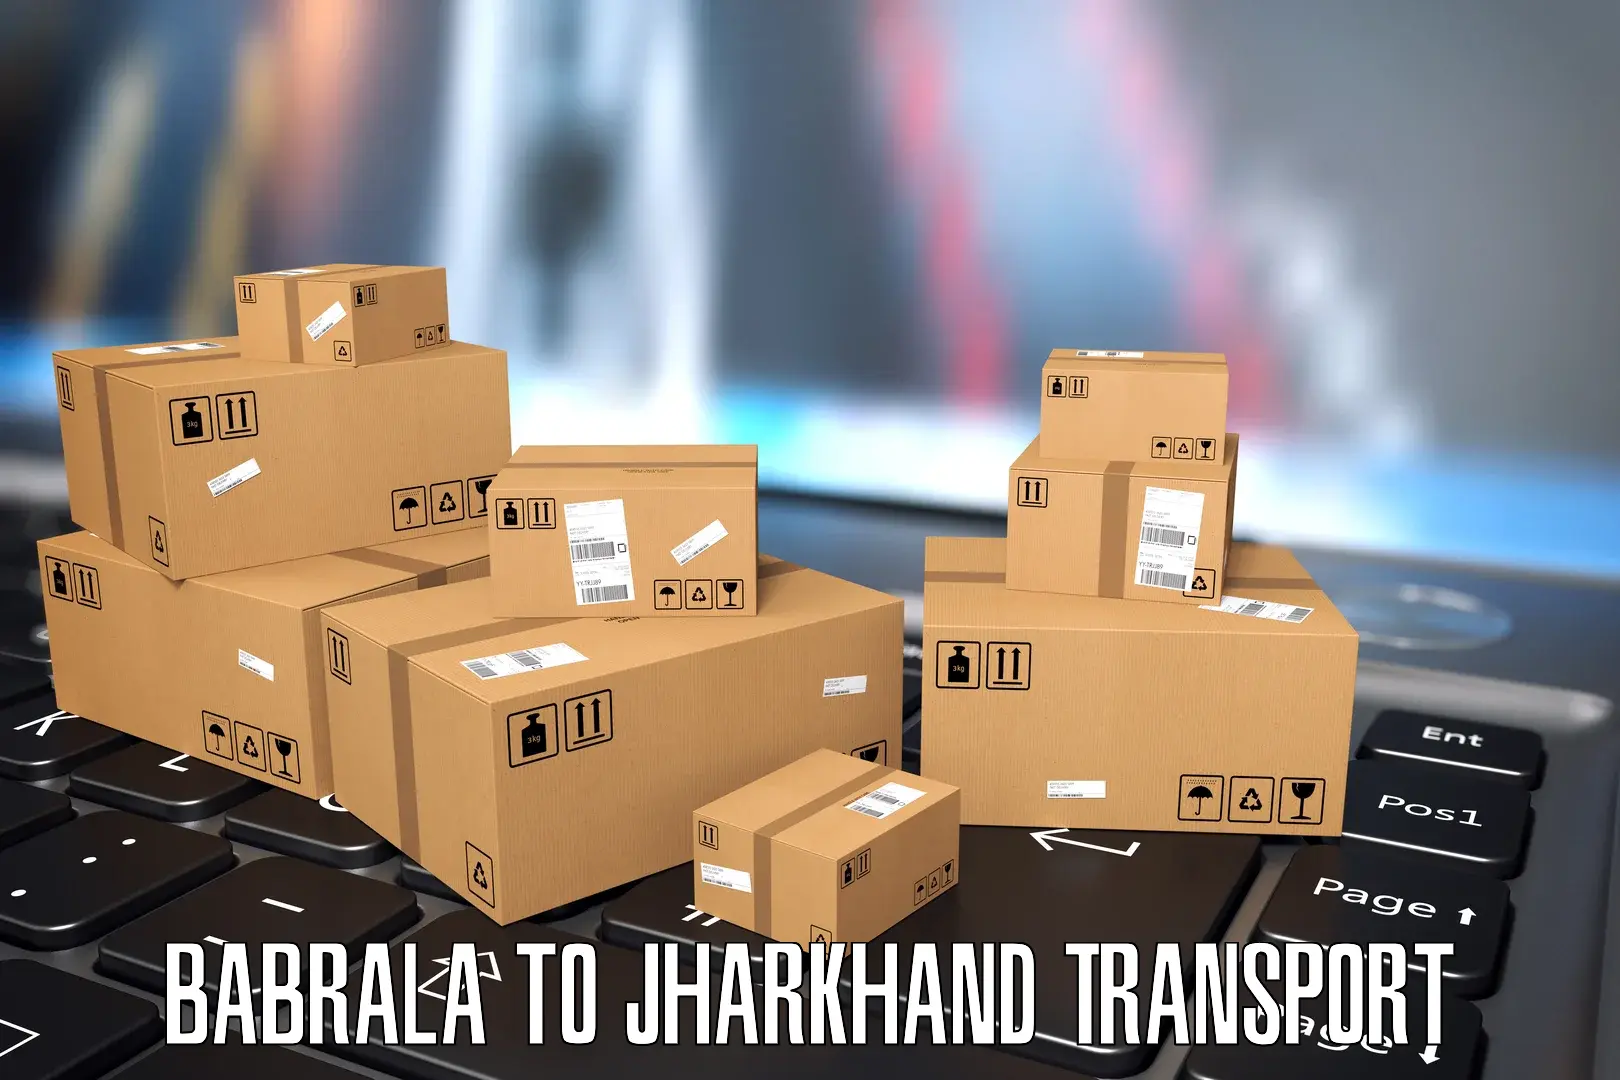 Land transport services Babrala to Padma Hazaribagh